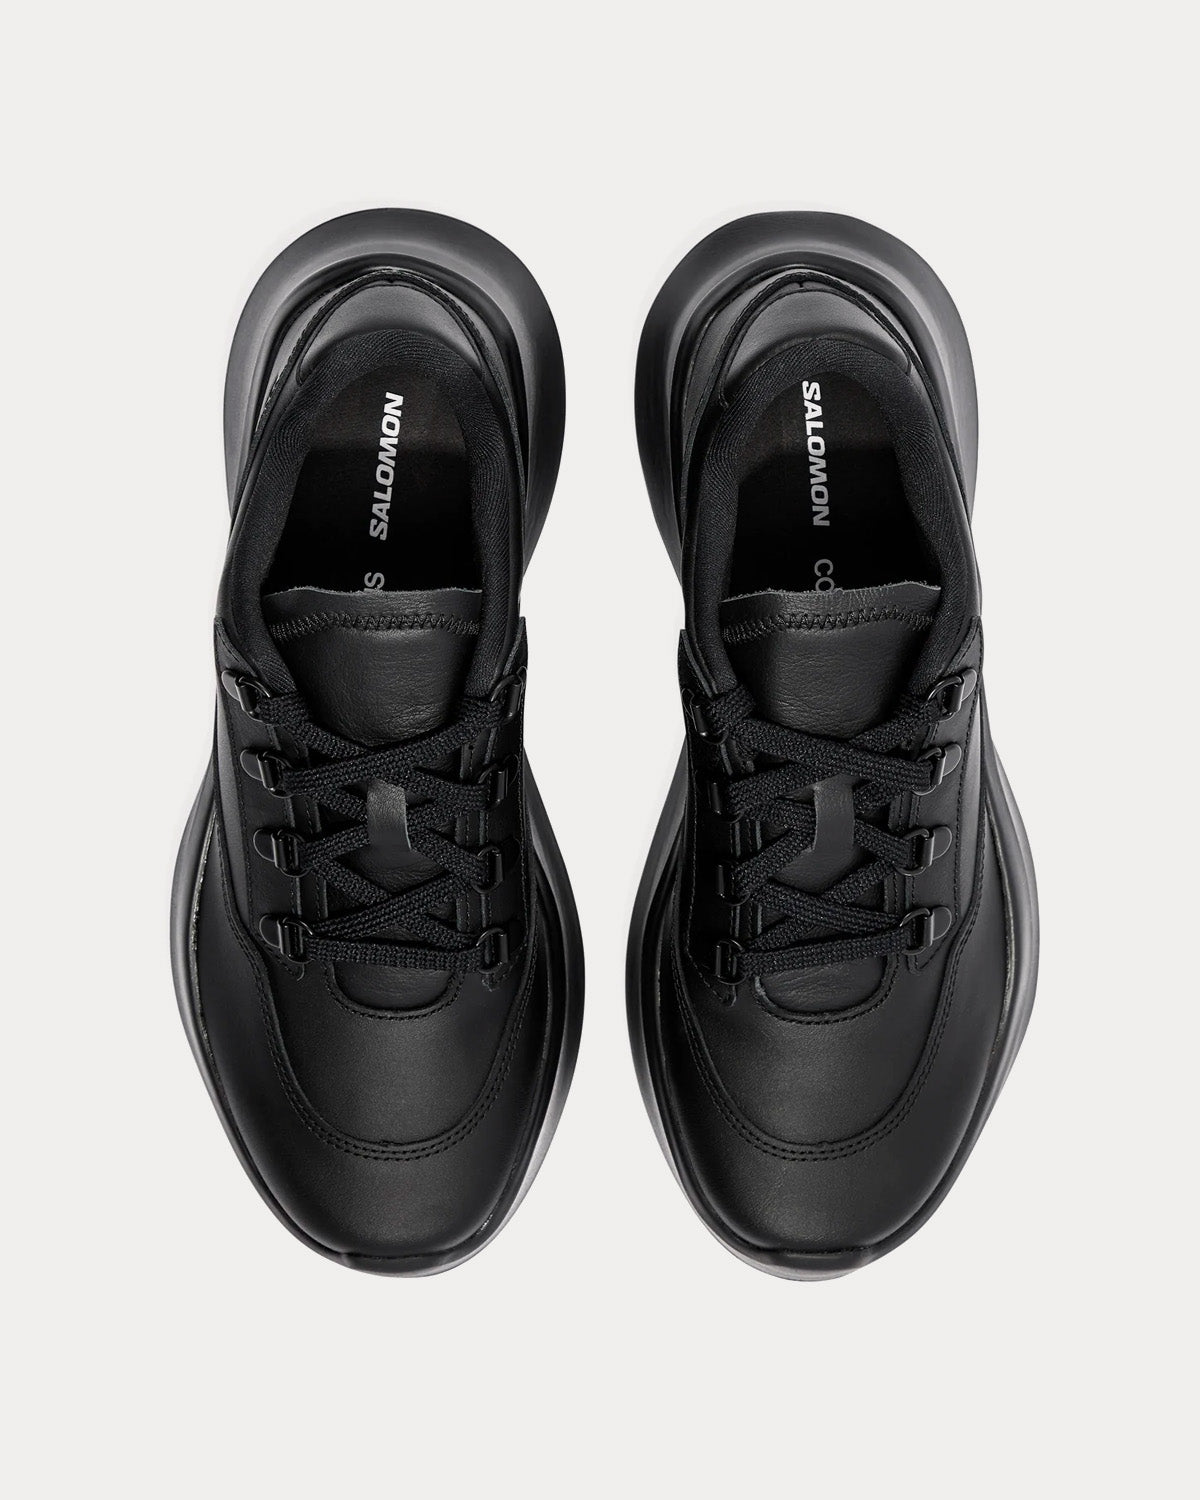 Salomon x Comme des Garçons - SR811 Platform Leather Black Low Top Sneakers